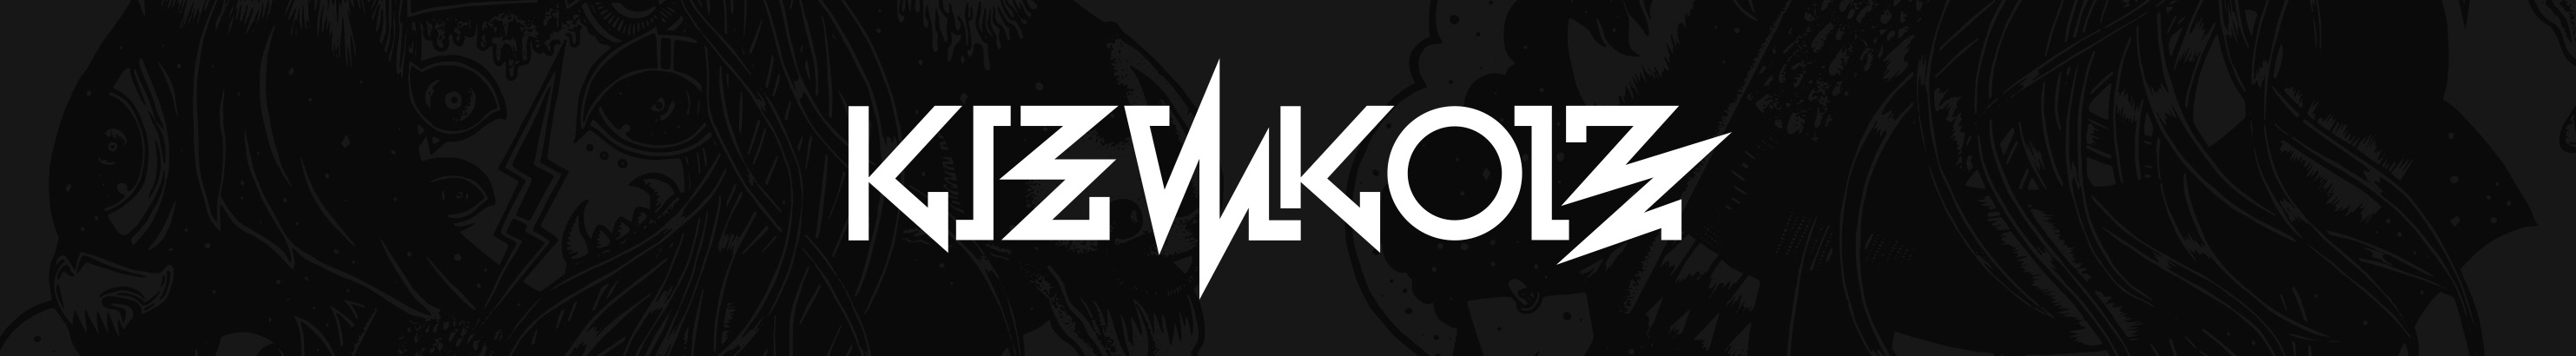 Banner de perfil de KIEW KOIZ